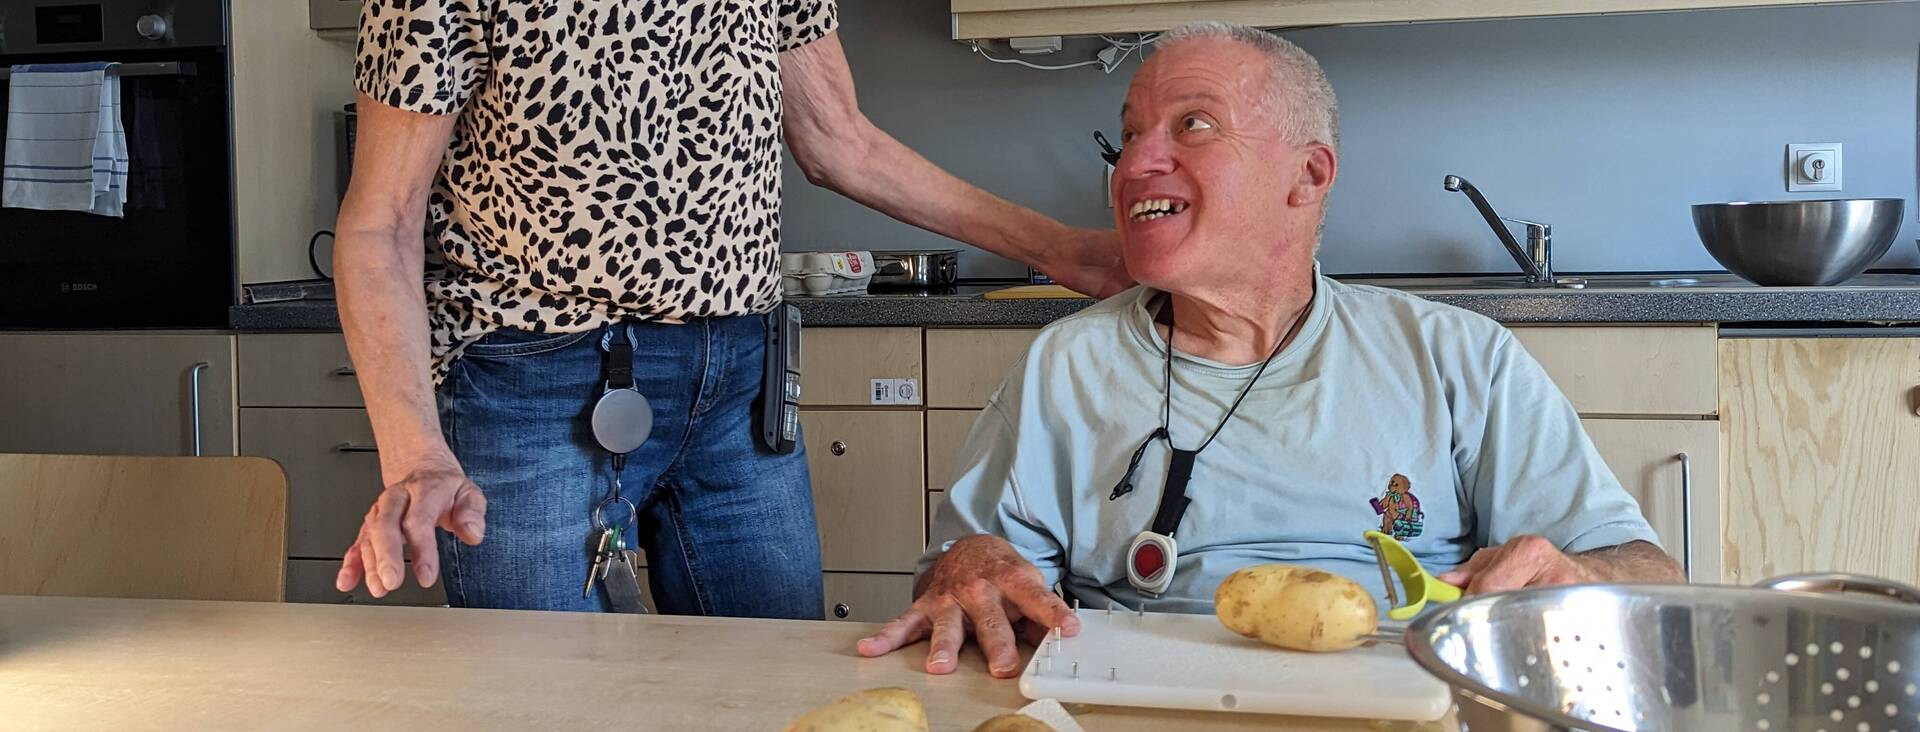 Eine Betreuerin hilft einem Wohnheim Bewohner bei dem Kartoffel schälen, beide lächeln fröhlich..